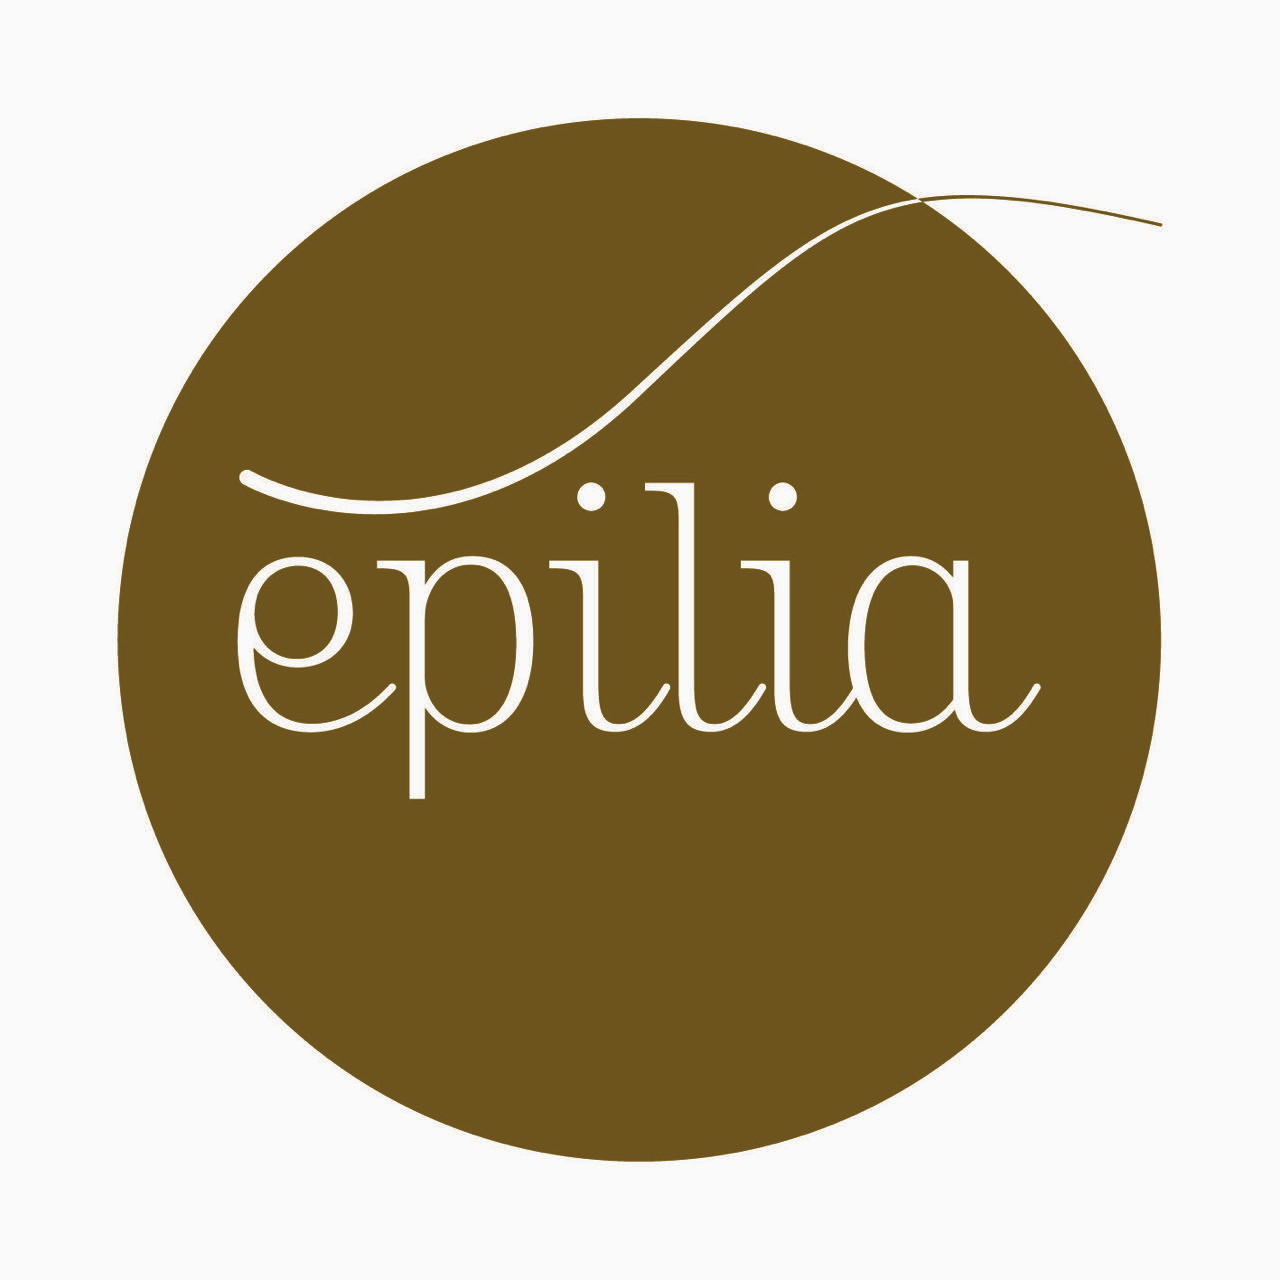 Epilia L'épilation definitive